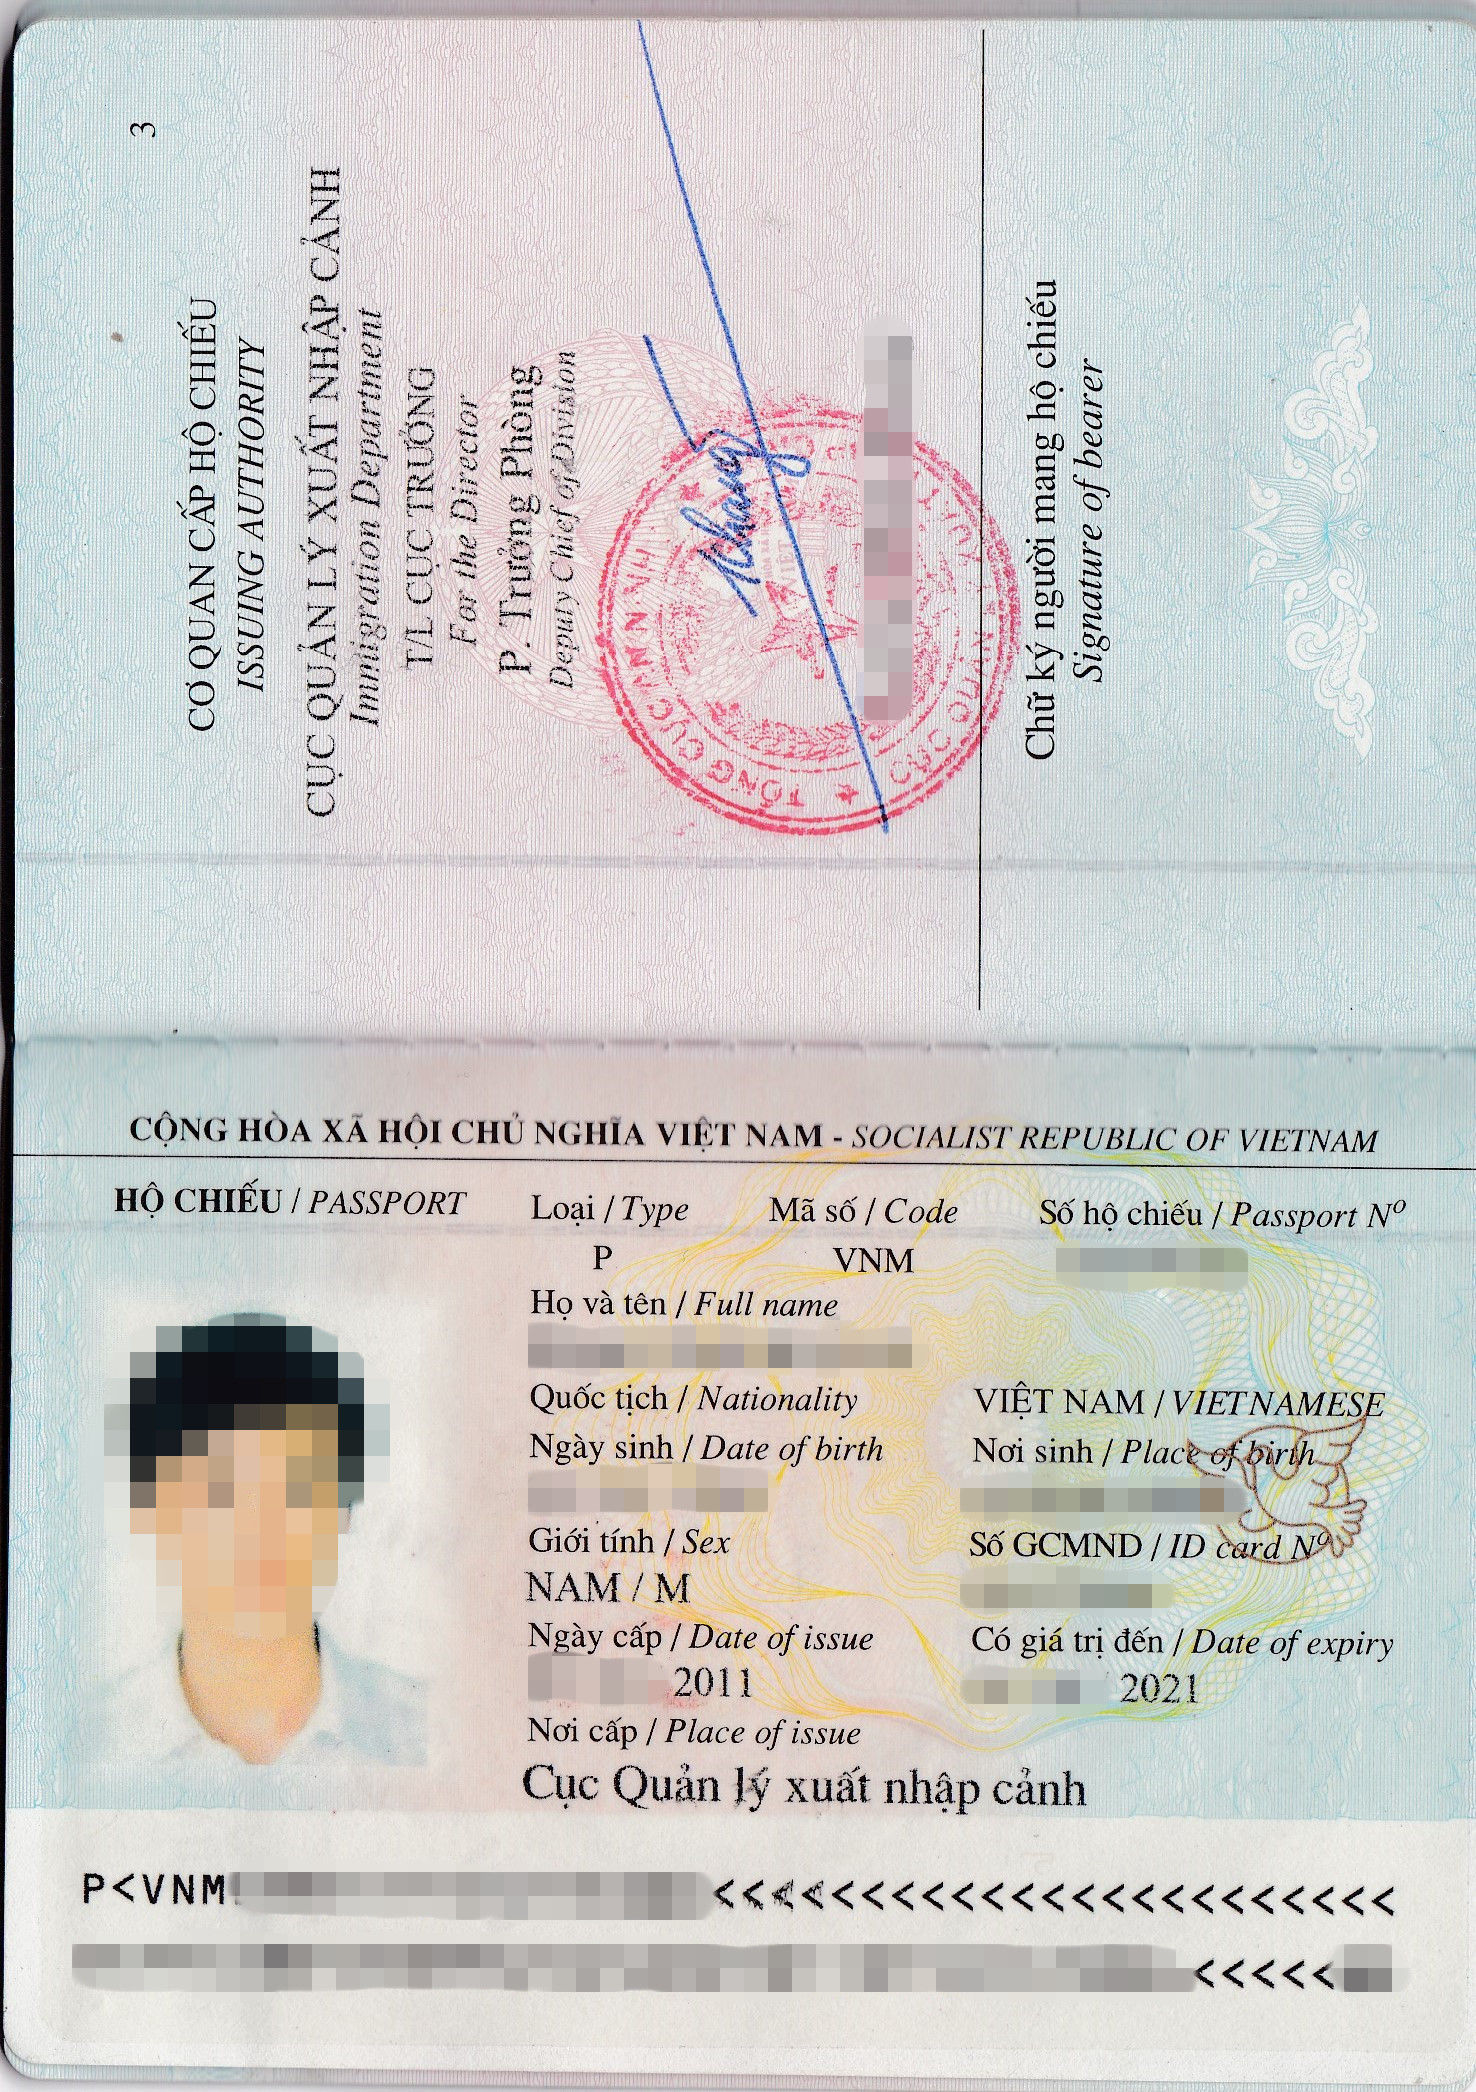 Các thông tin trong hộ chiếu (passport)